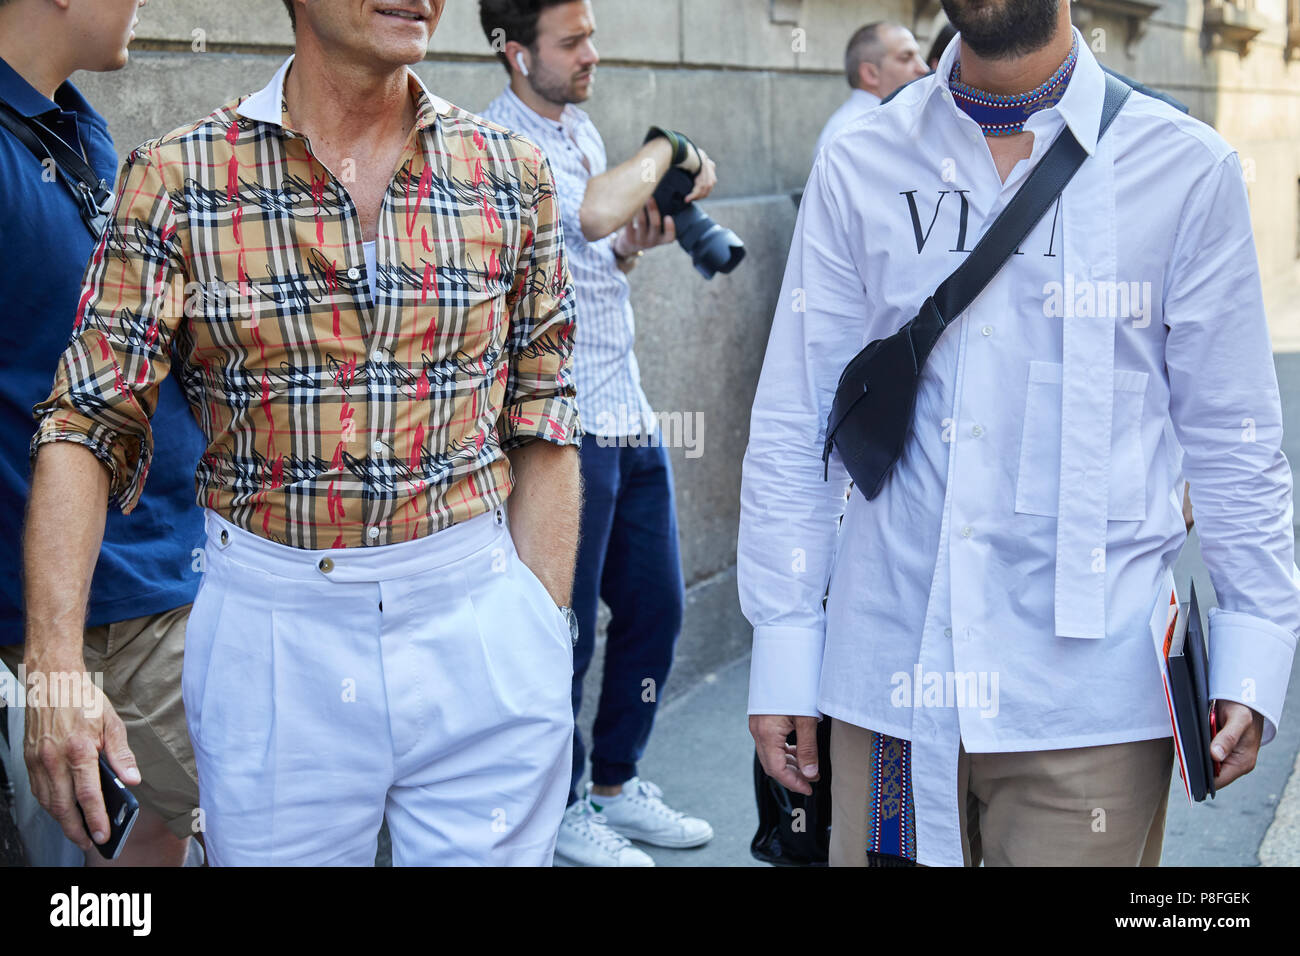 Milán - 16 de junio: Los hombres con Camisa Burberry y Valentino camisa  blanca caminando antes les